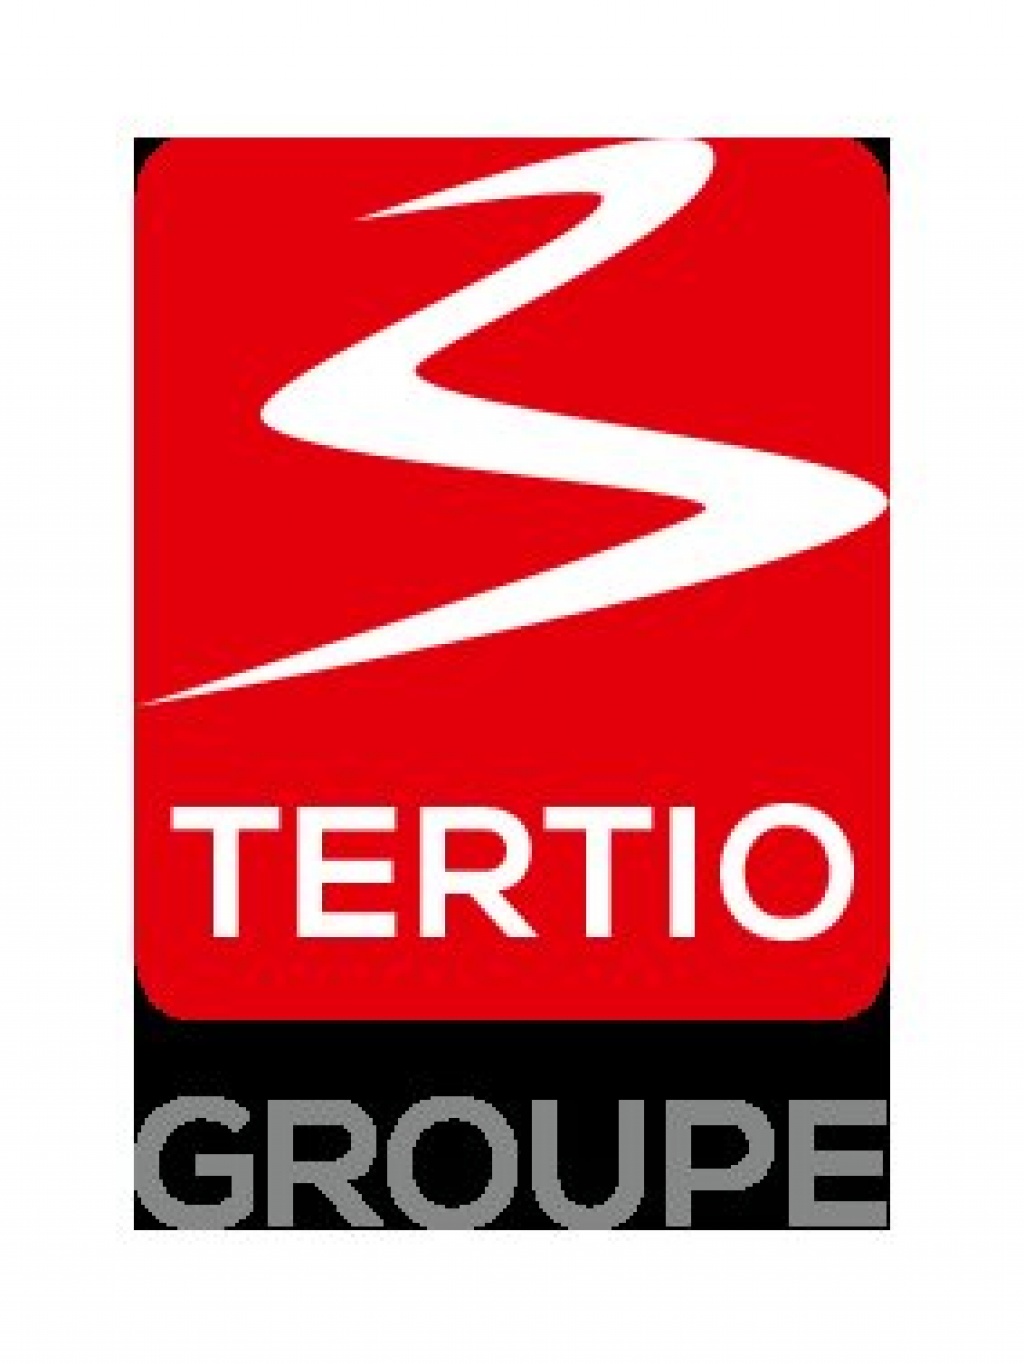 Le groupe TERTIO recherche un(e) chargé(e) de promo